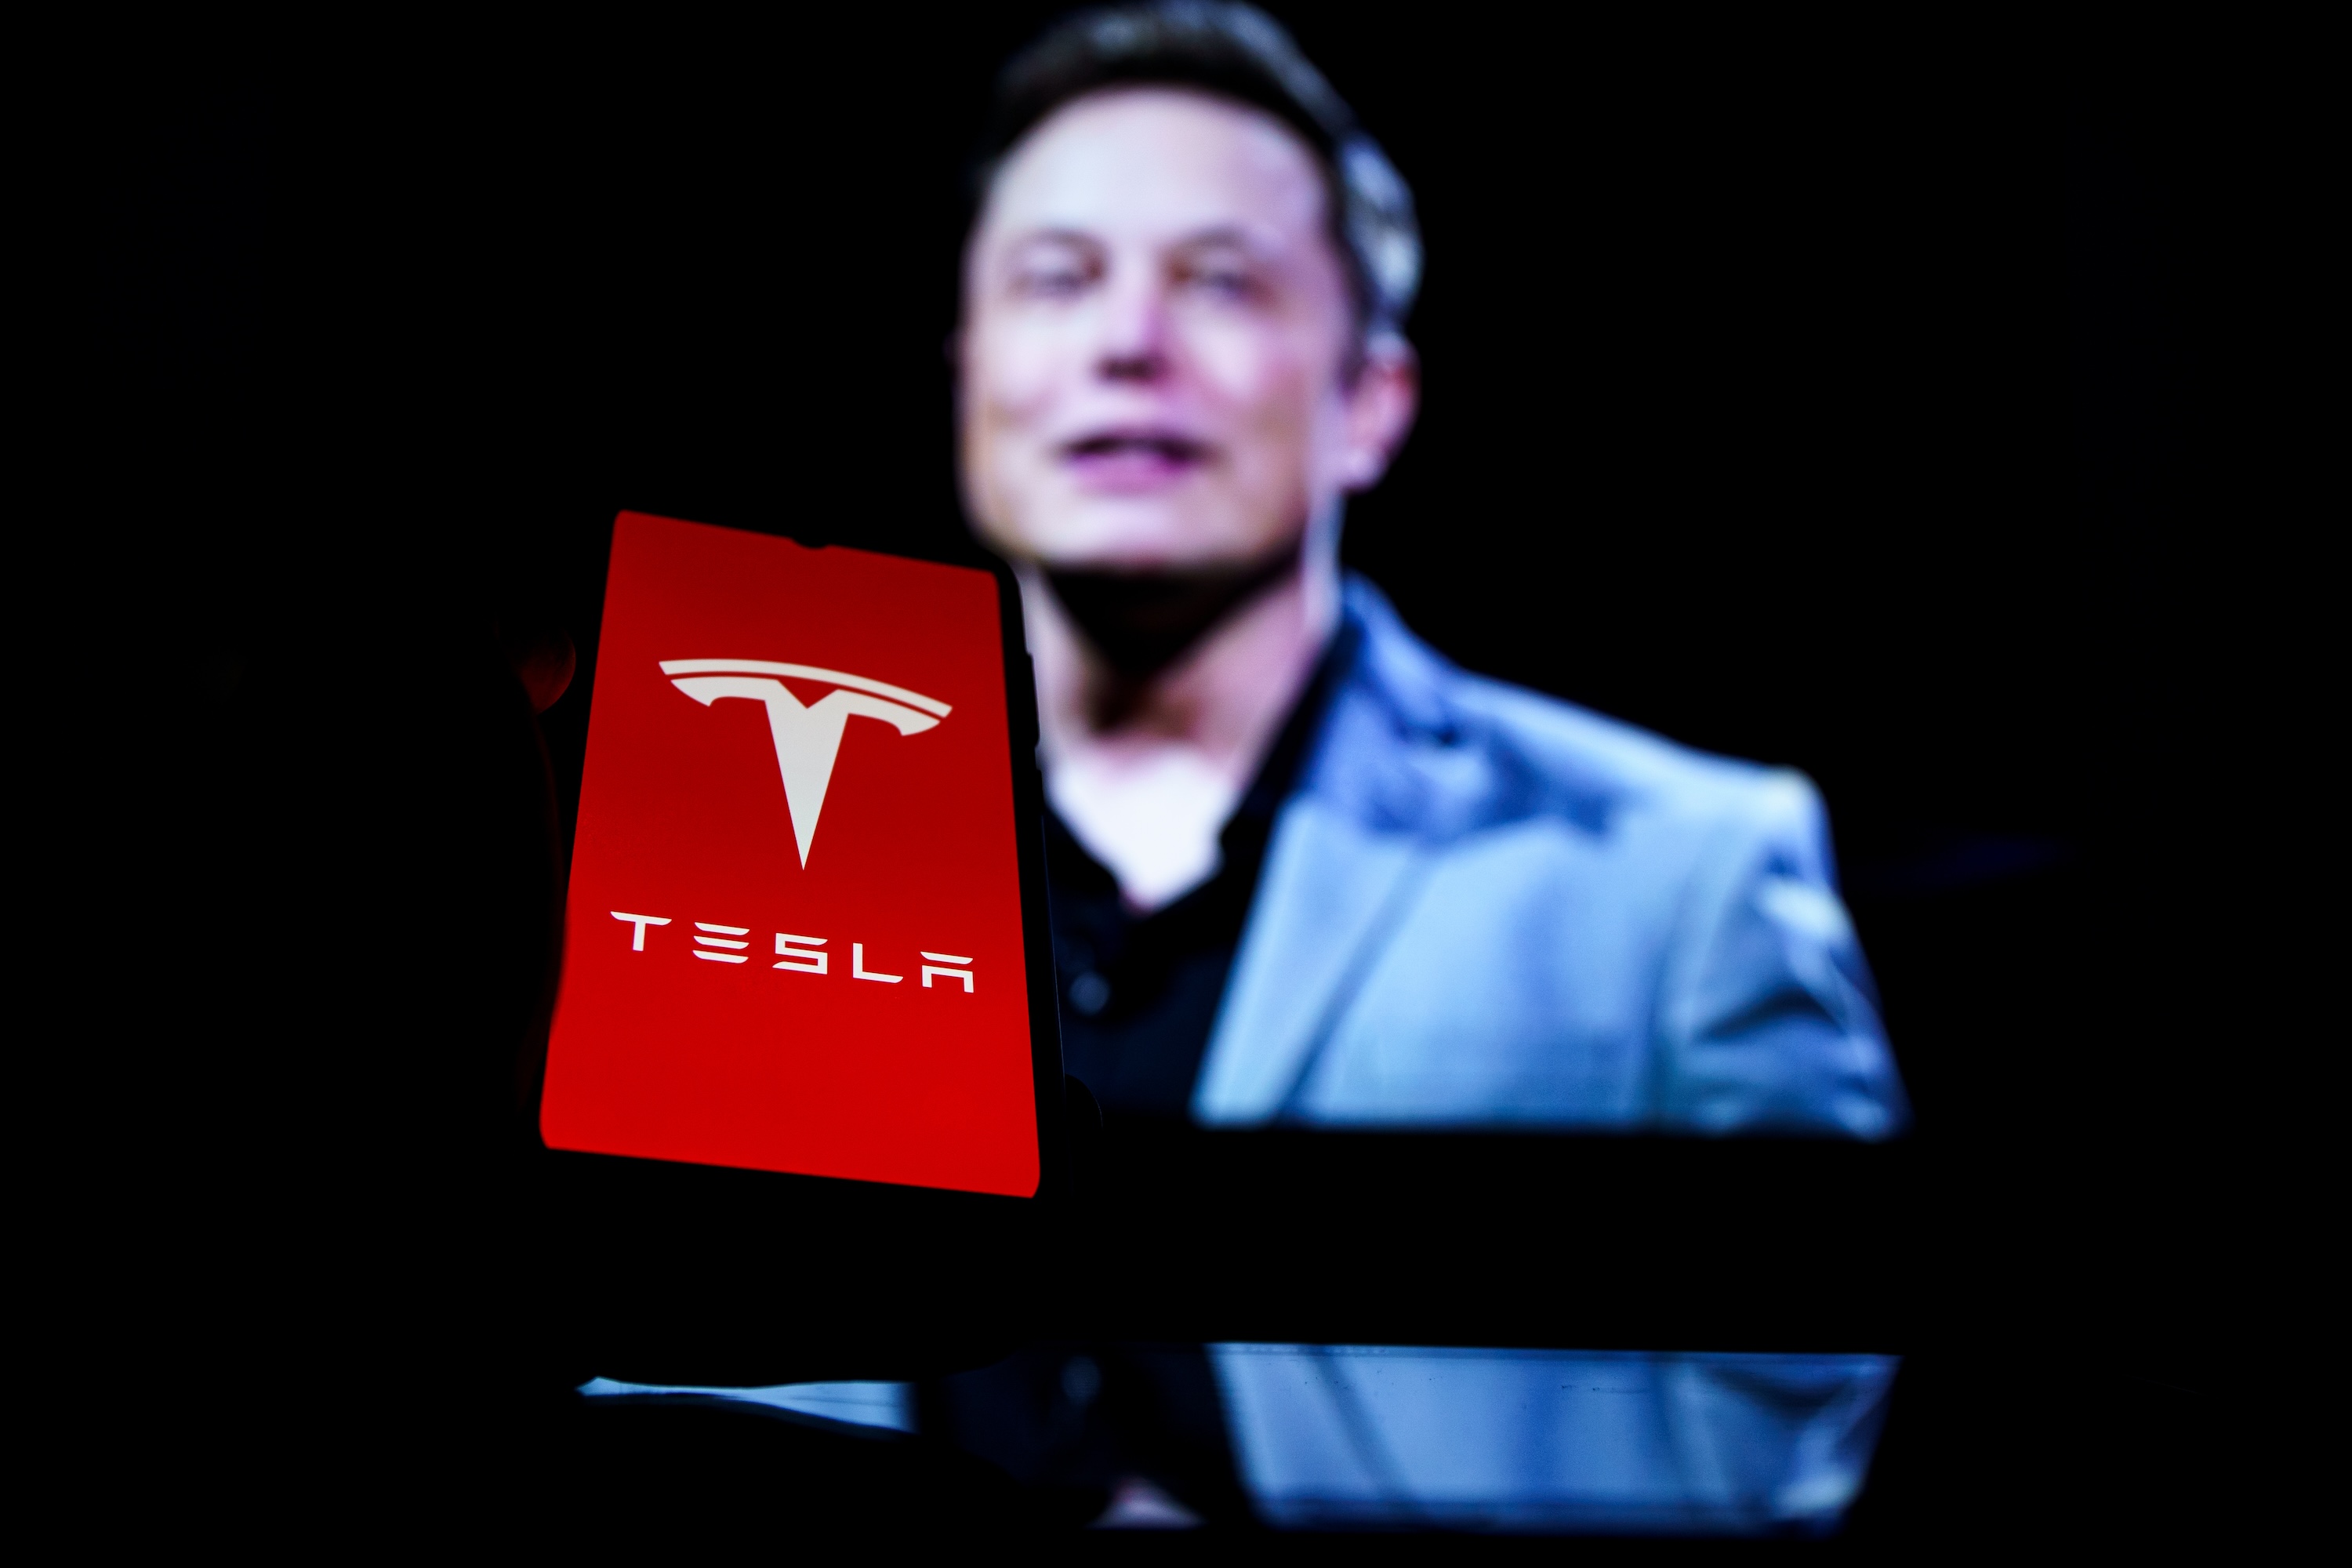 La solution d'Elon Musk pour baisser le prix des Tesla ? Faire dormir les ouvriers à l'usine